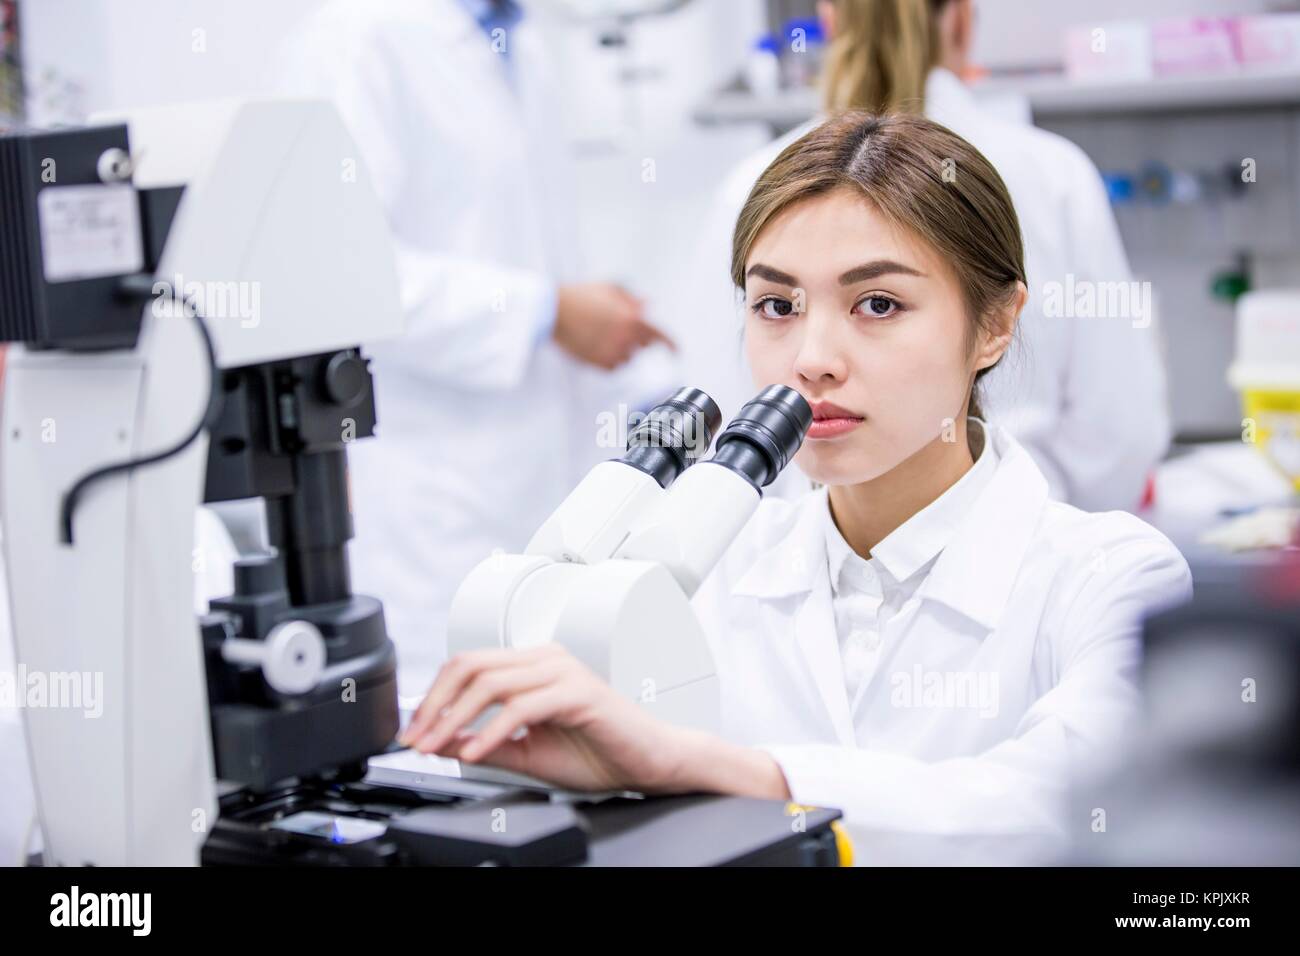 Female scientist using microscope in laboratory. Stock Photo